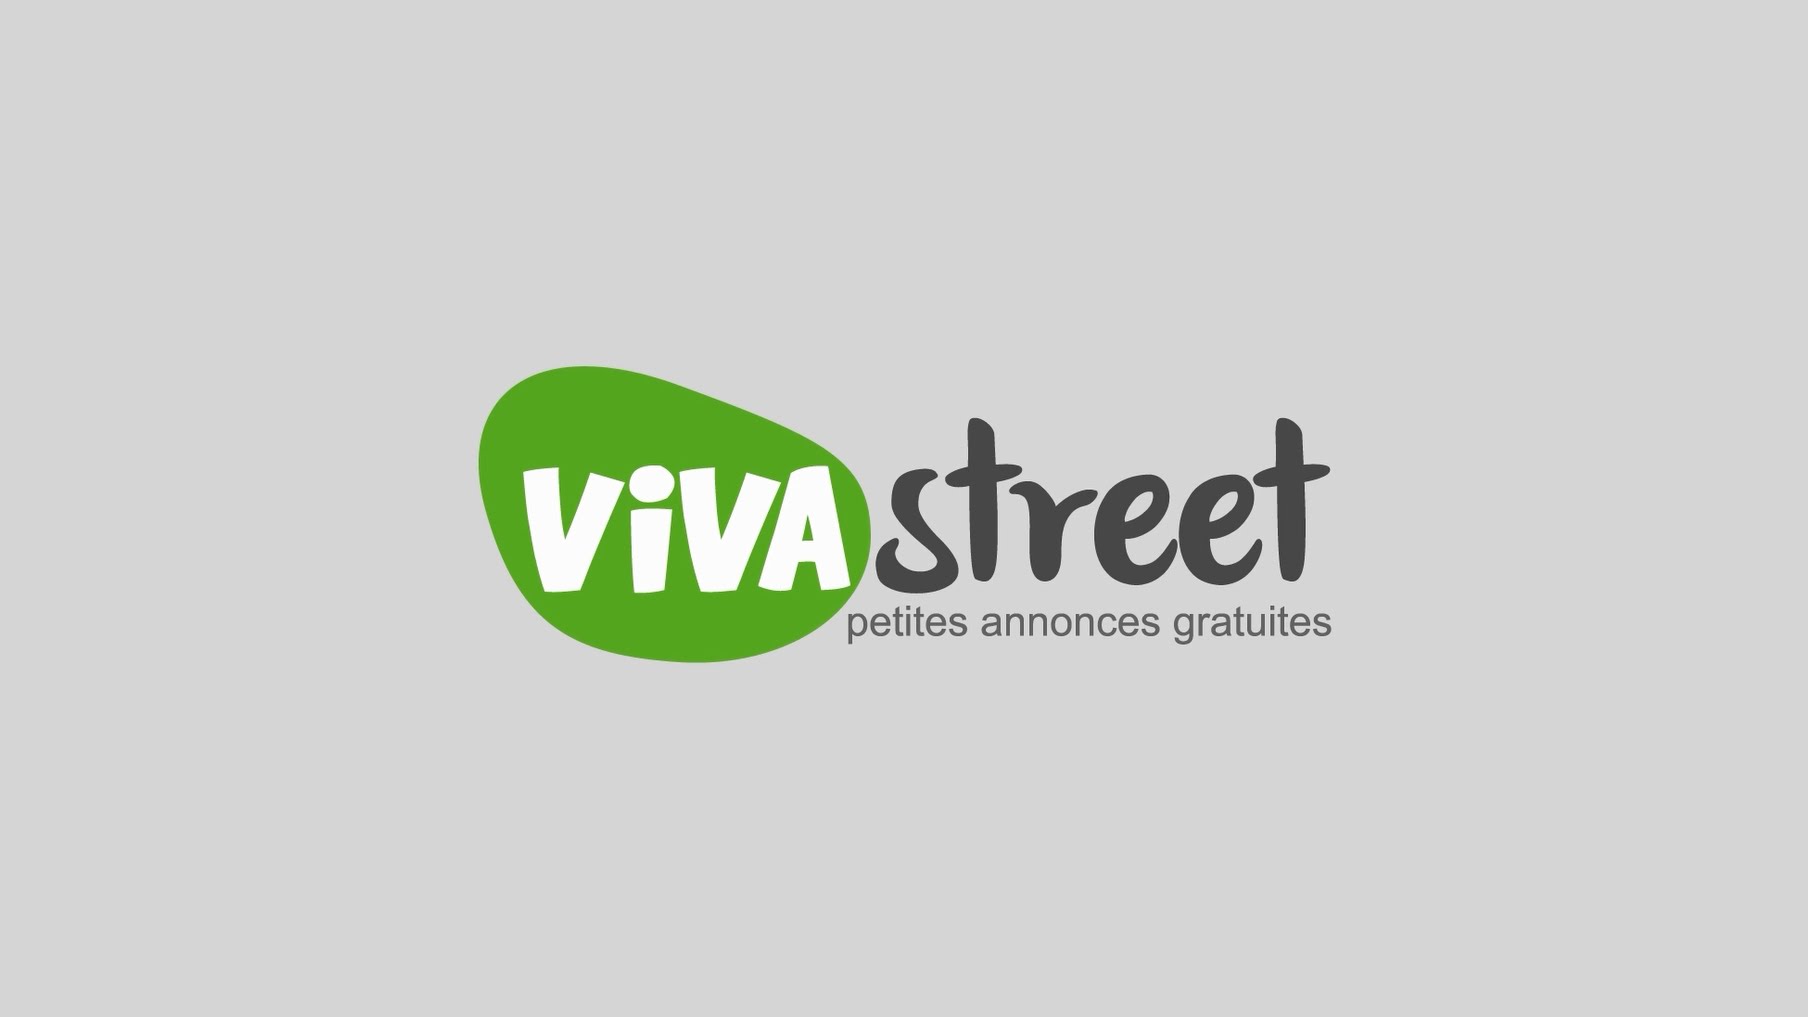 Viva street fife